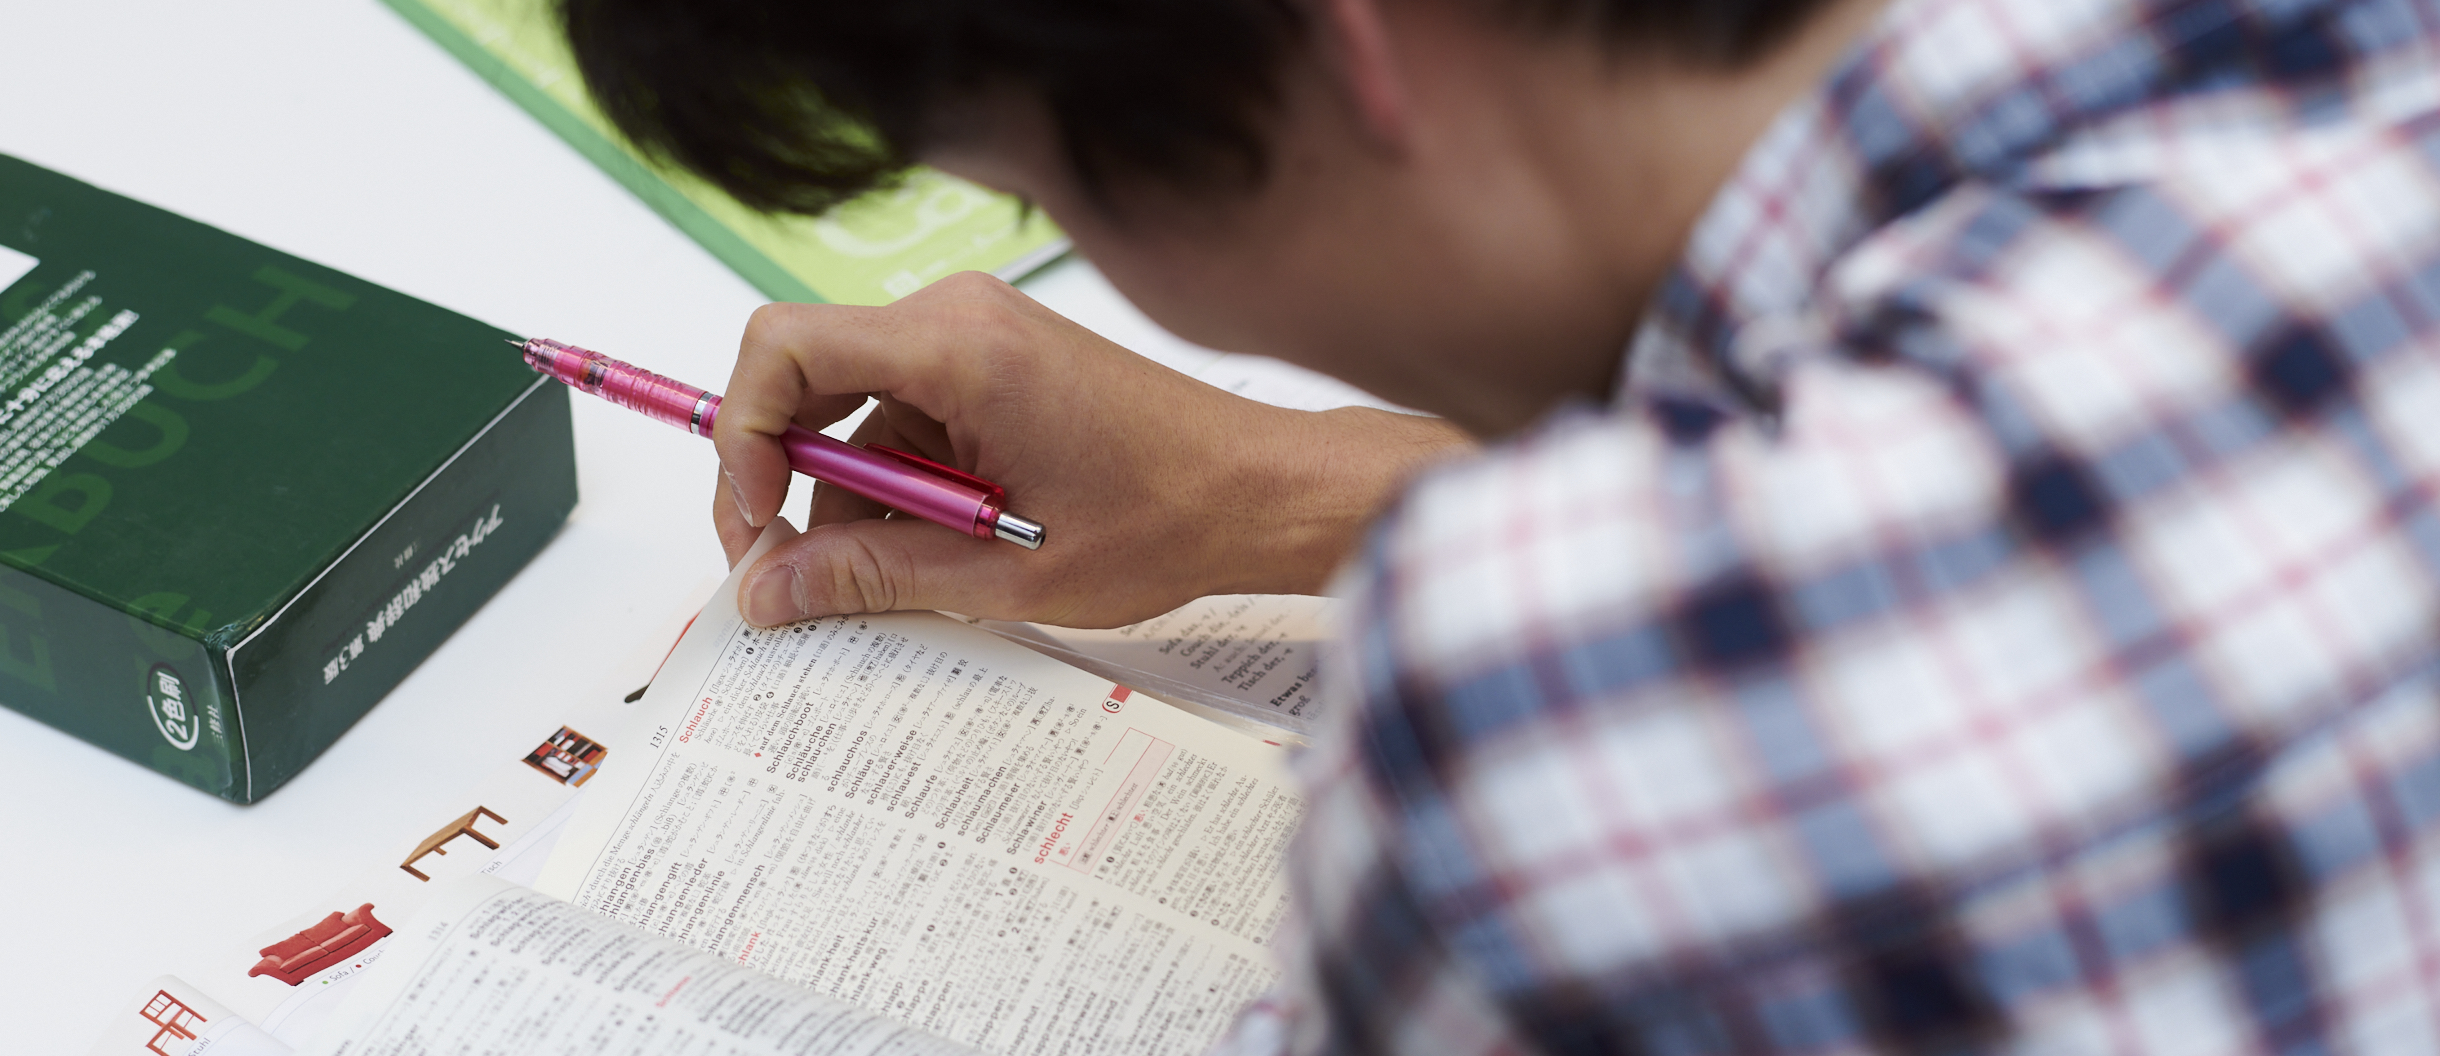 Ein junger Mann hat einen Stift in der Hand und blättert in einem deutsch-chinesischen Wörterbuch.